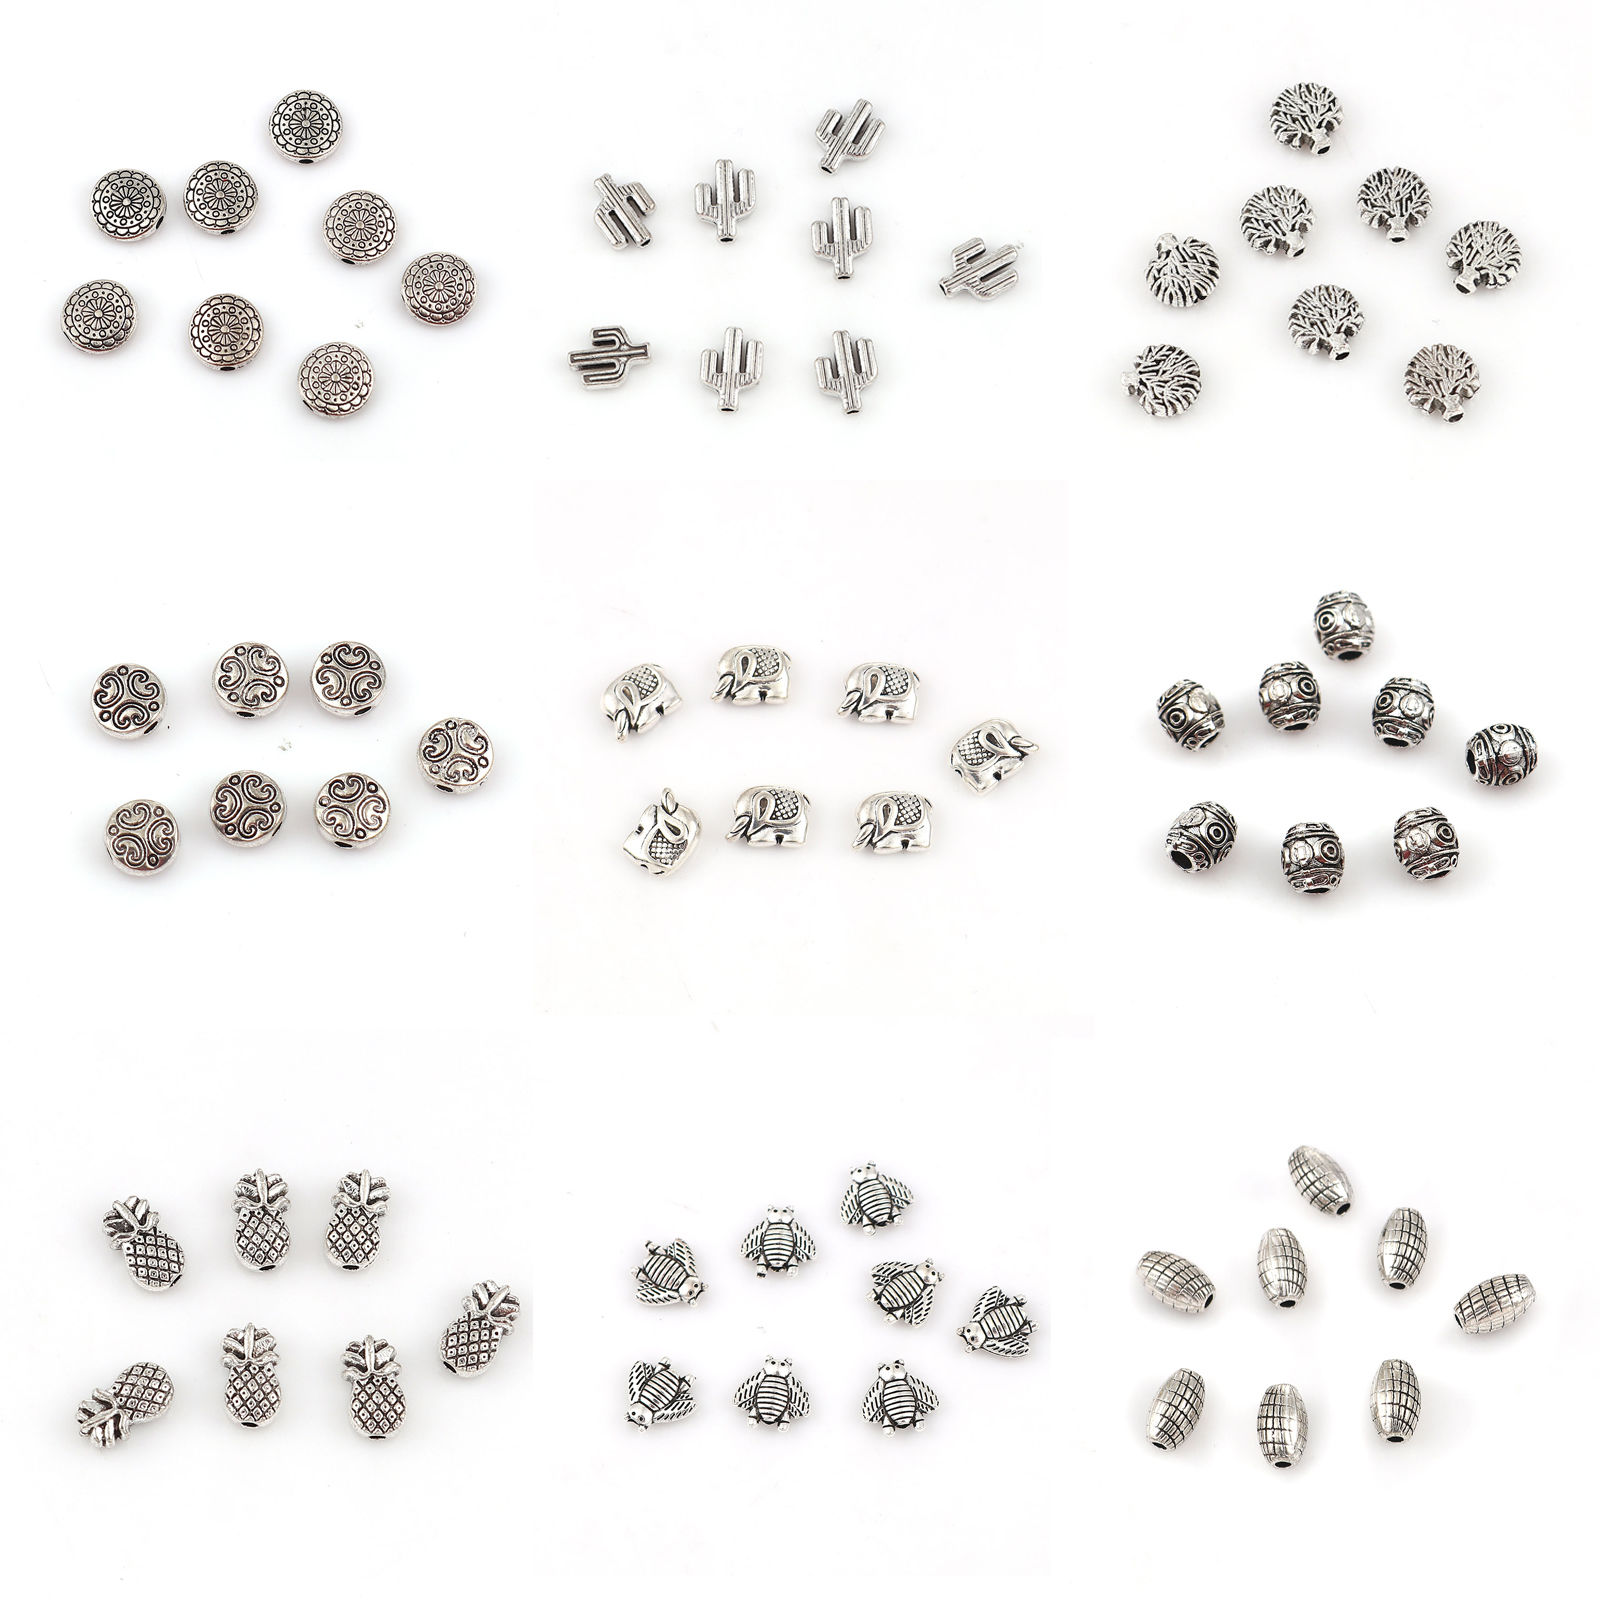 Image de Perles en Alliage de Zinc Hibou Argent Vieilli (Approprié à Strass ss4) 11mm x 11mm, Trou env. 1.8mm, 20 Pcs